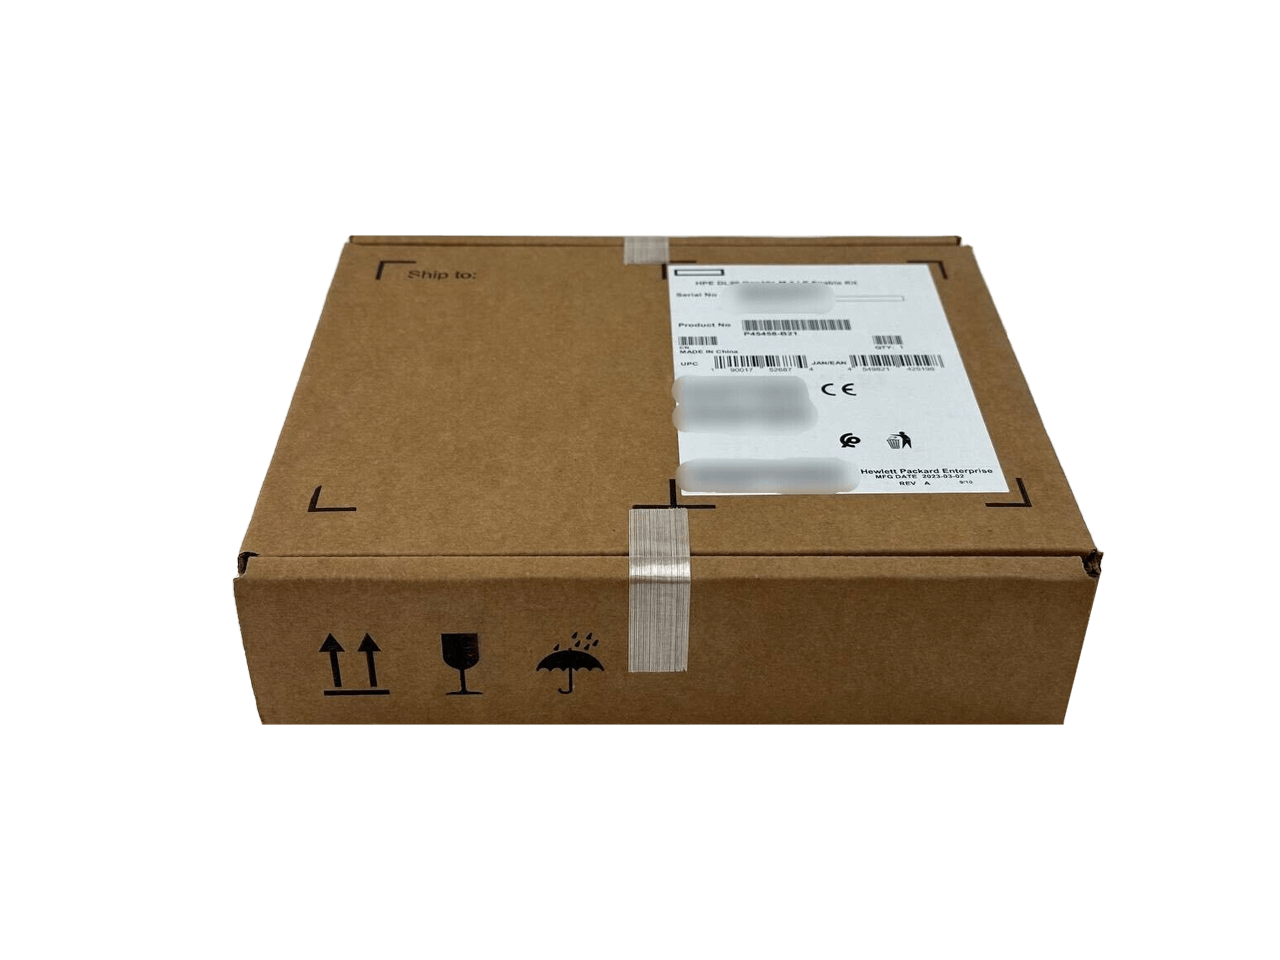 HPE P45458-B21 ProLiant DL20 Gen10+ M.2 LP Enable Kit.